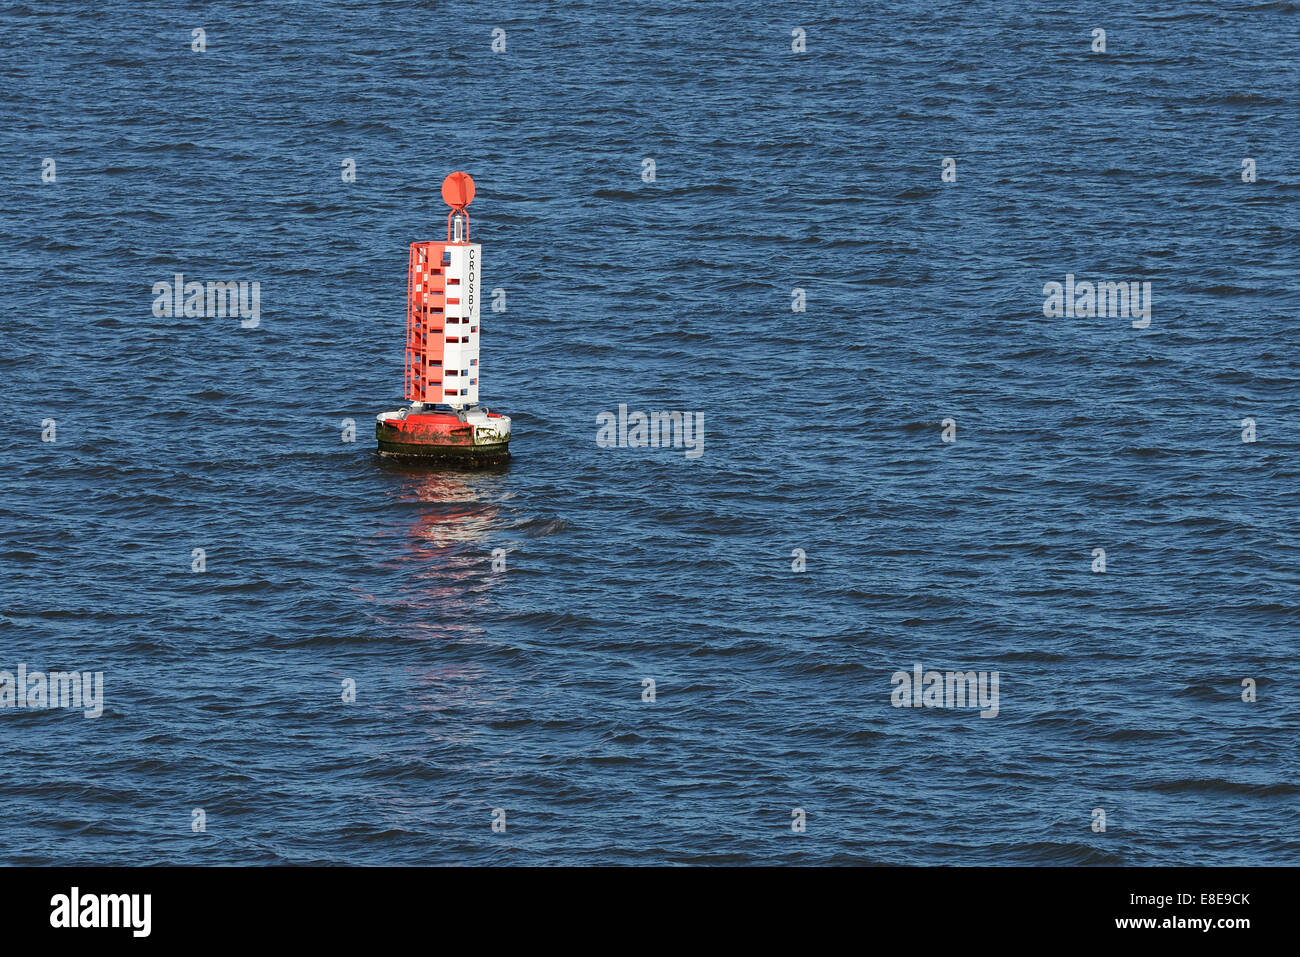 Boya de navegación marcando el envío seguro de canal en el río Mersey, cerca de Crosby Merseyside UK Foto de stock